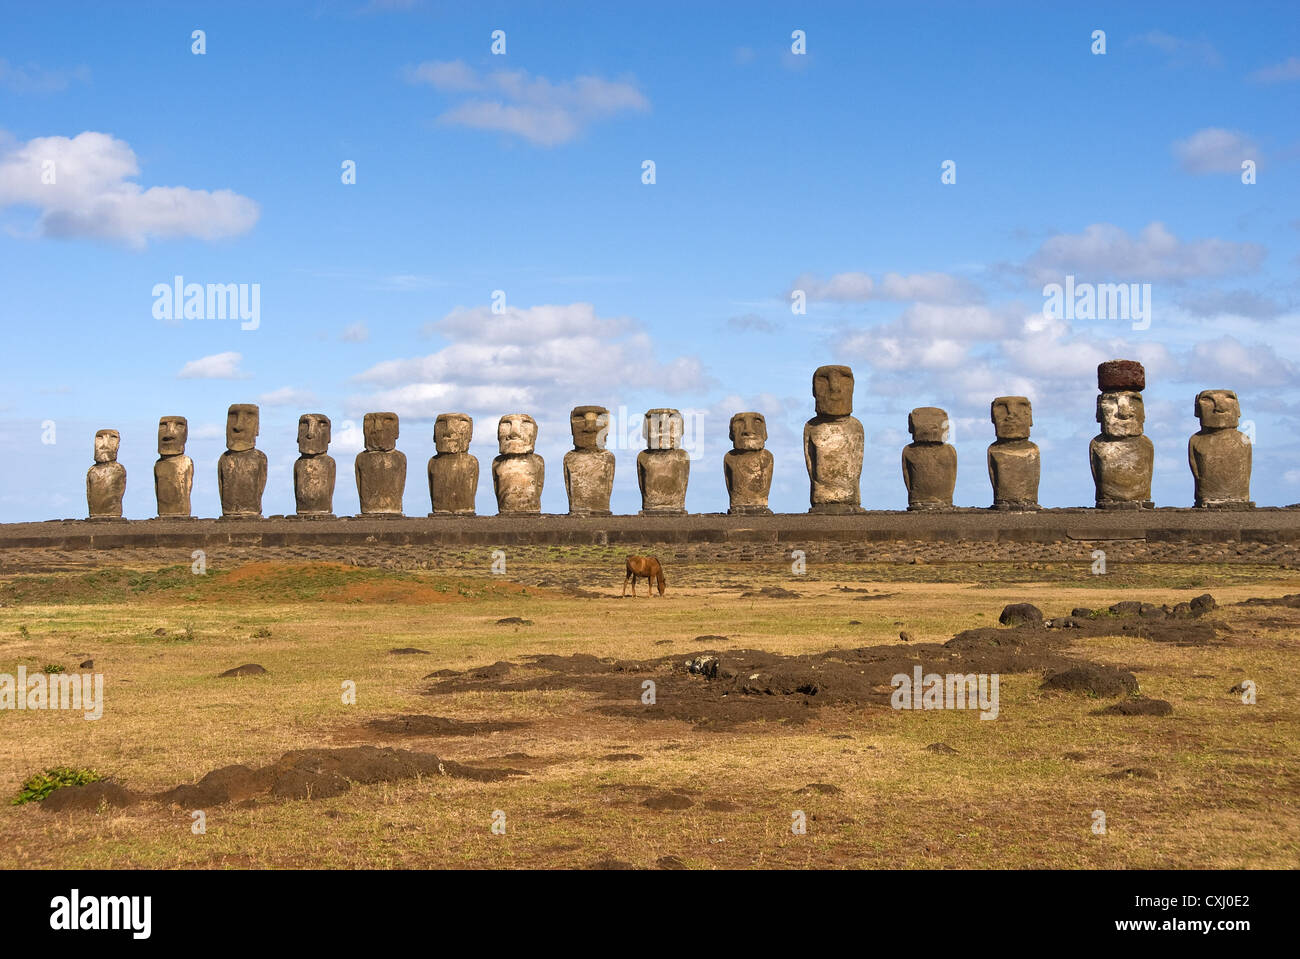 Elk198-5344 Cile, Isola di Pasqua, Ahu Tongariki, moai statue con cavallo Foto Stock